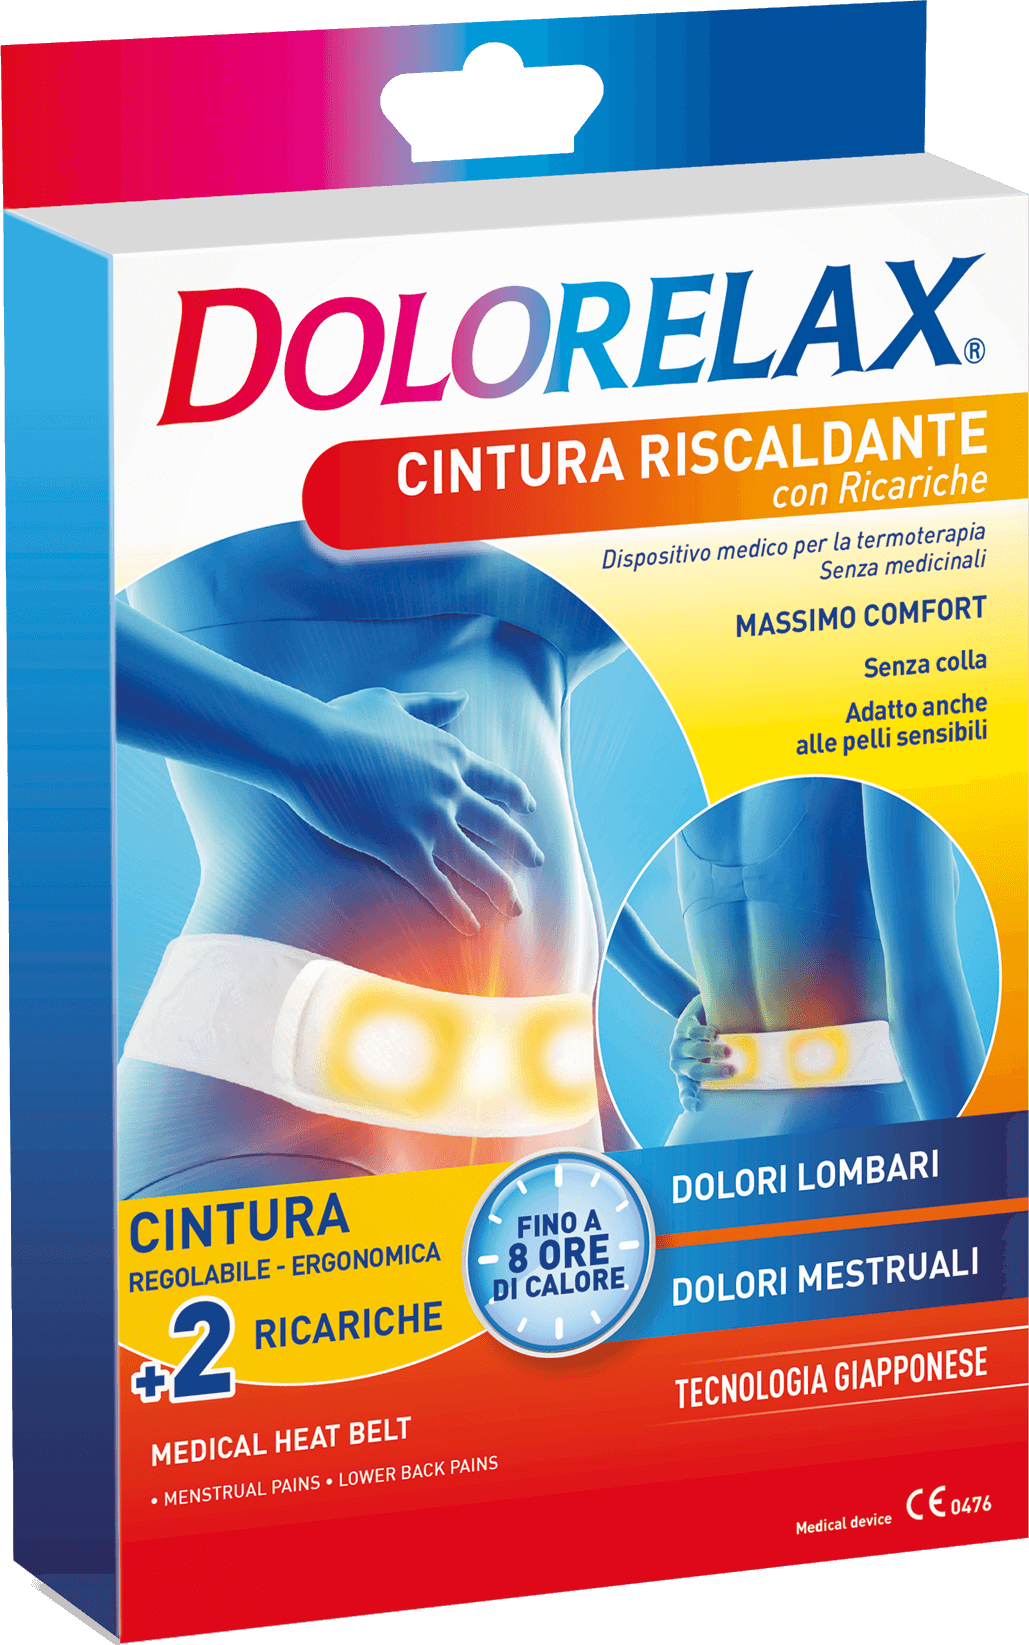 Dolorelax - La Cintura Riscaldante con Ricariche è dispositivo medico per  la termoterapia